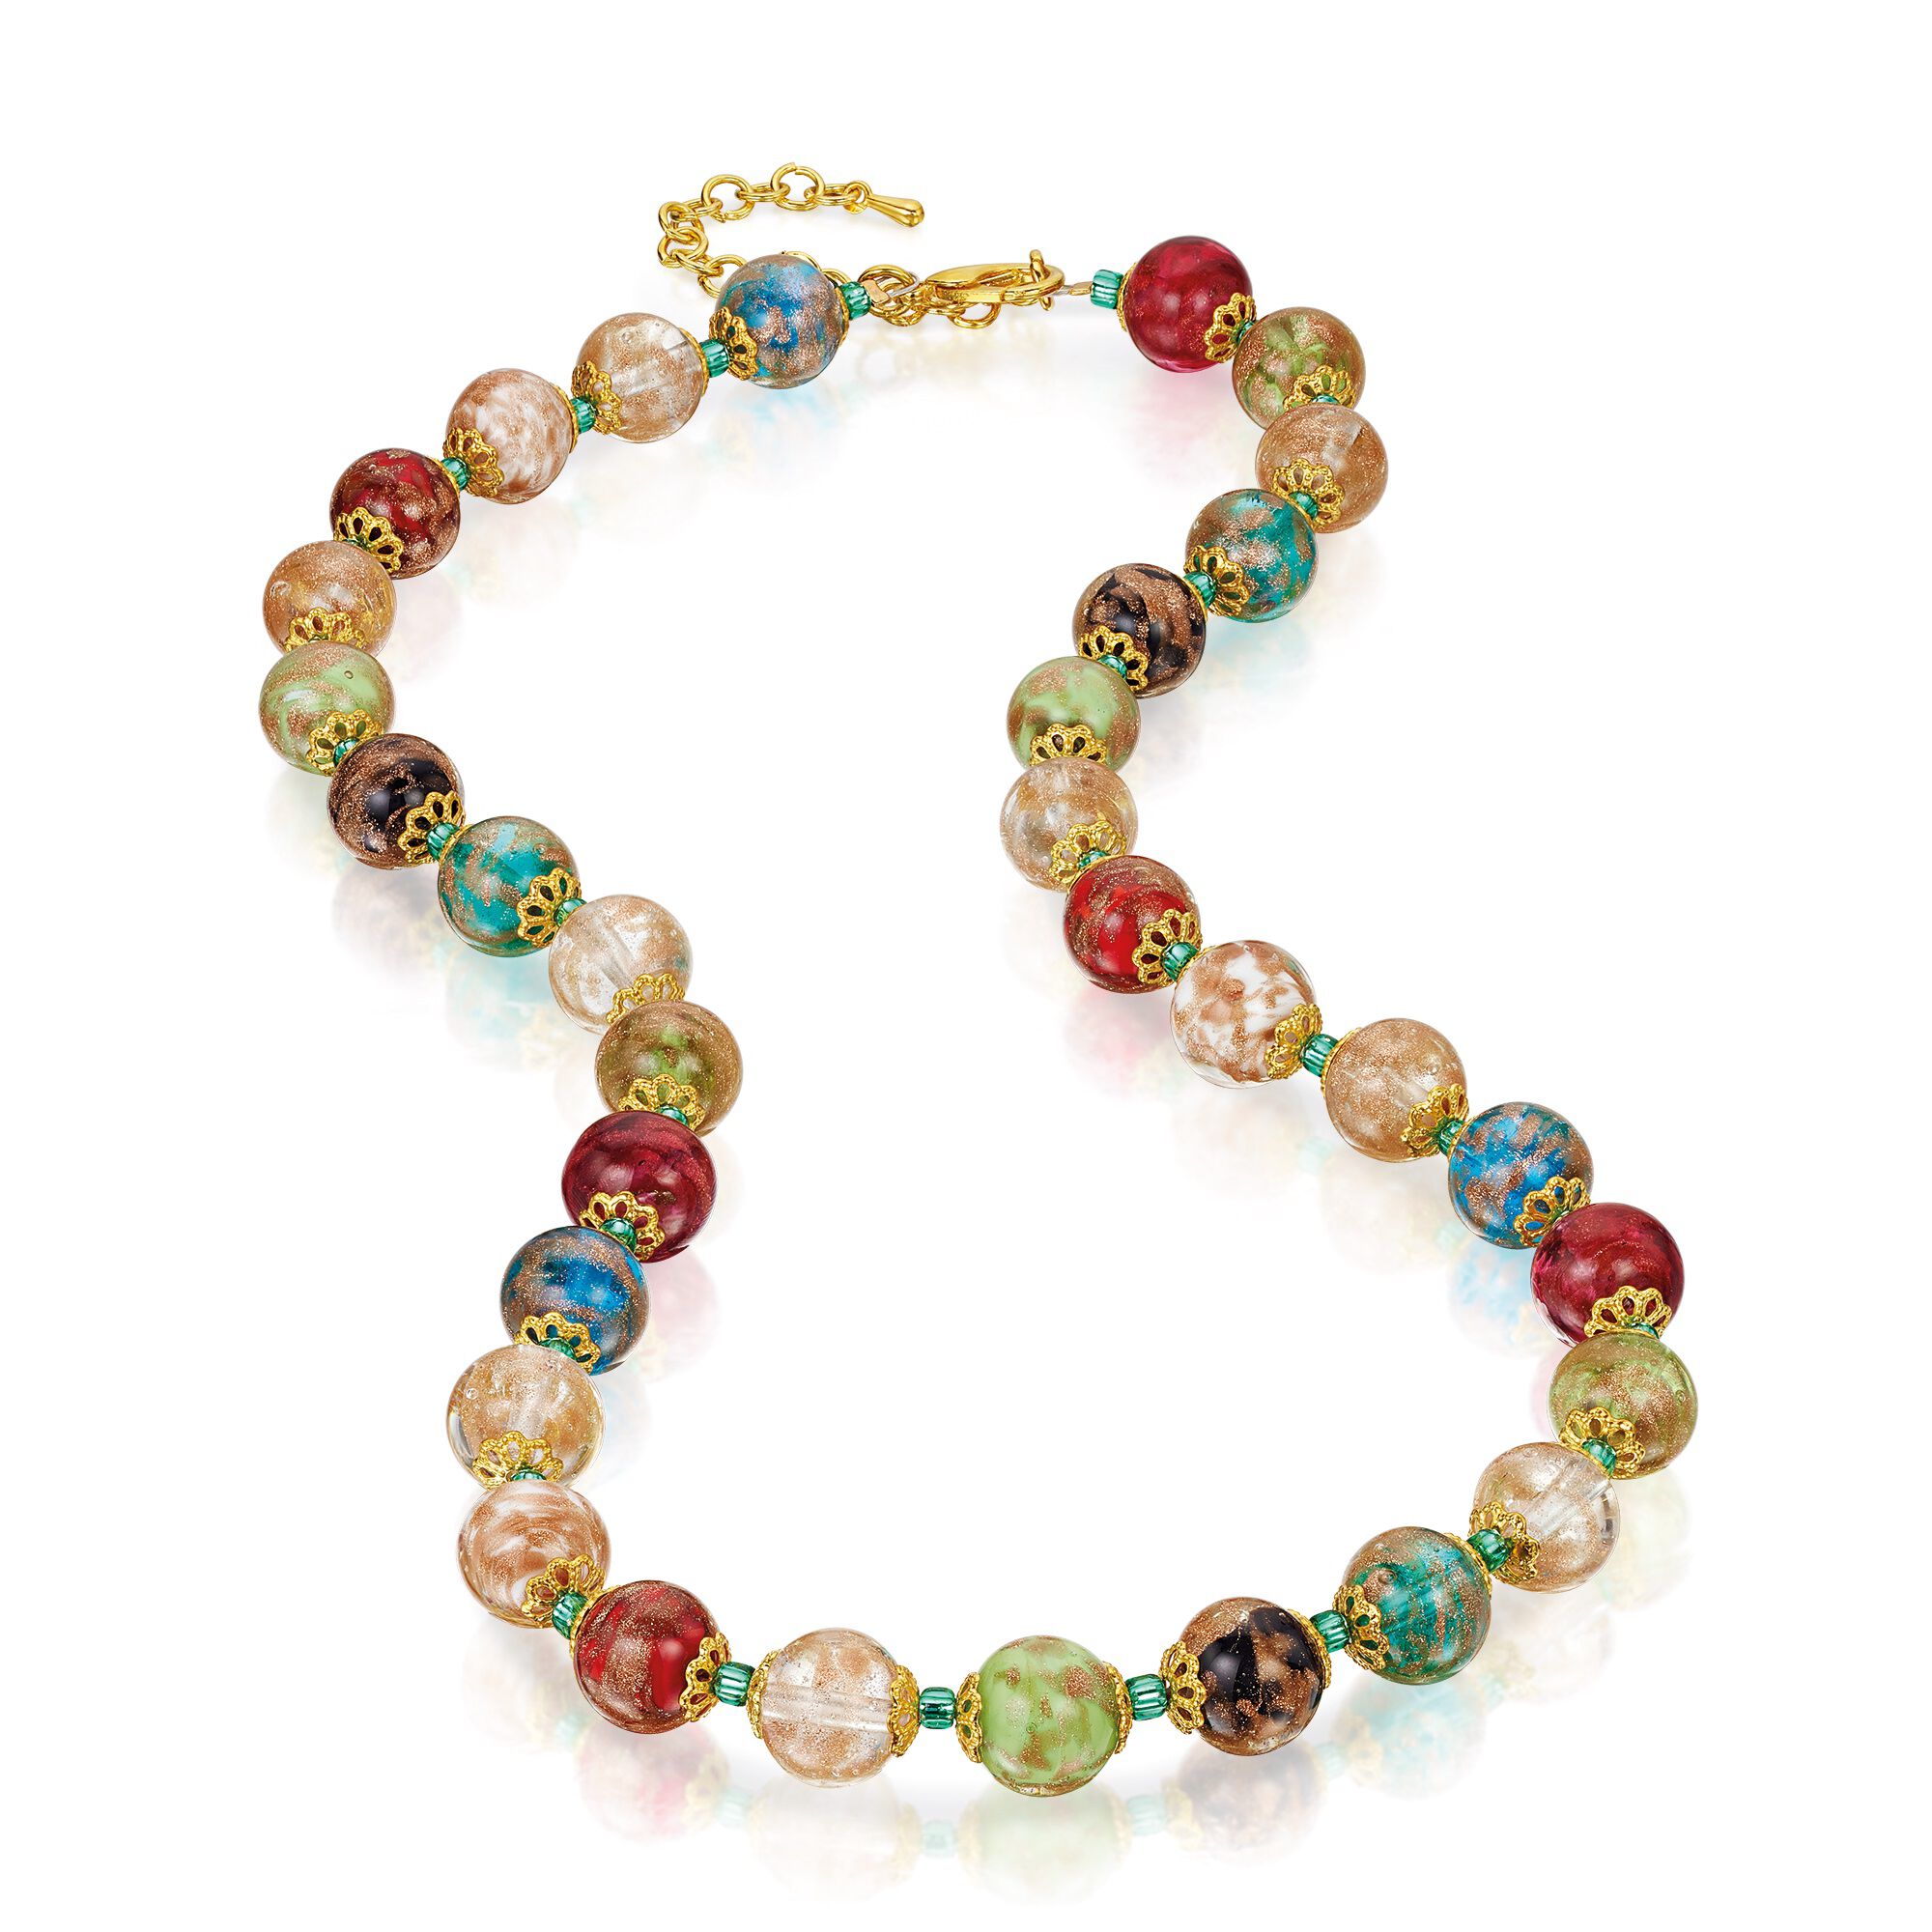 Rose Quartz Beads Necklace 17 Inches